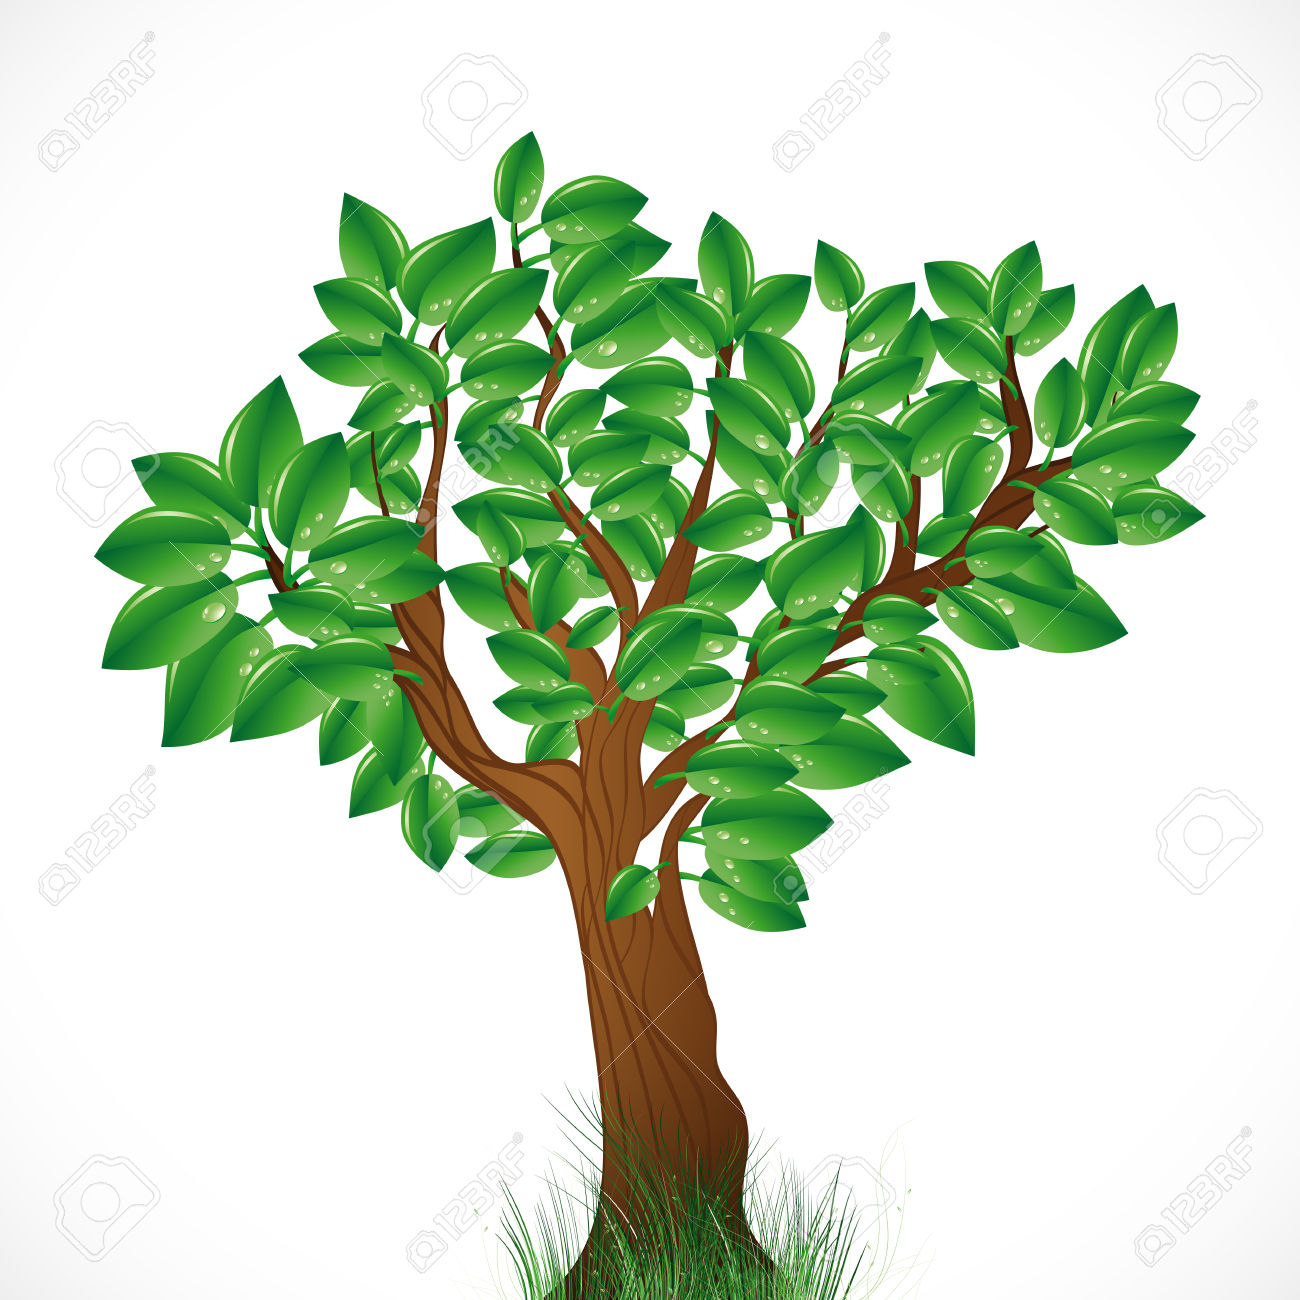 free clip art green tree - photo #45